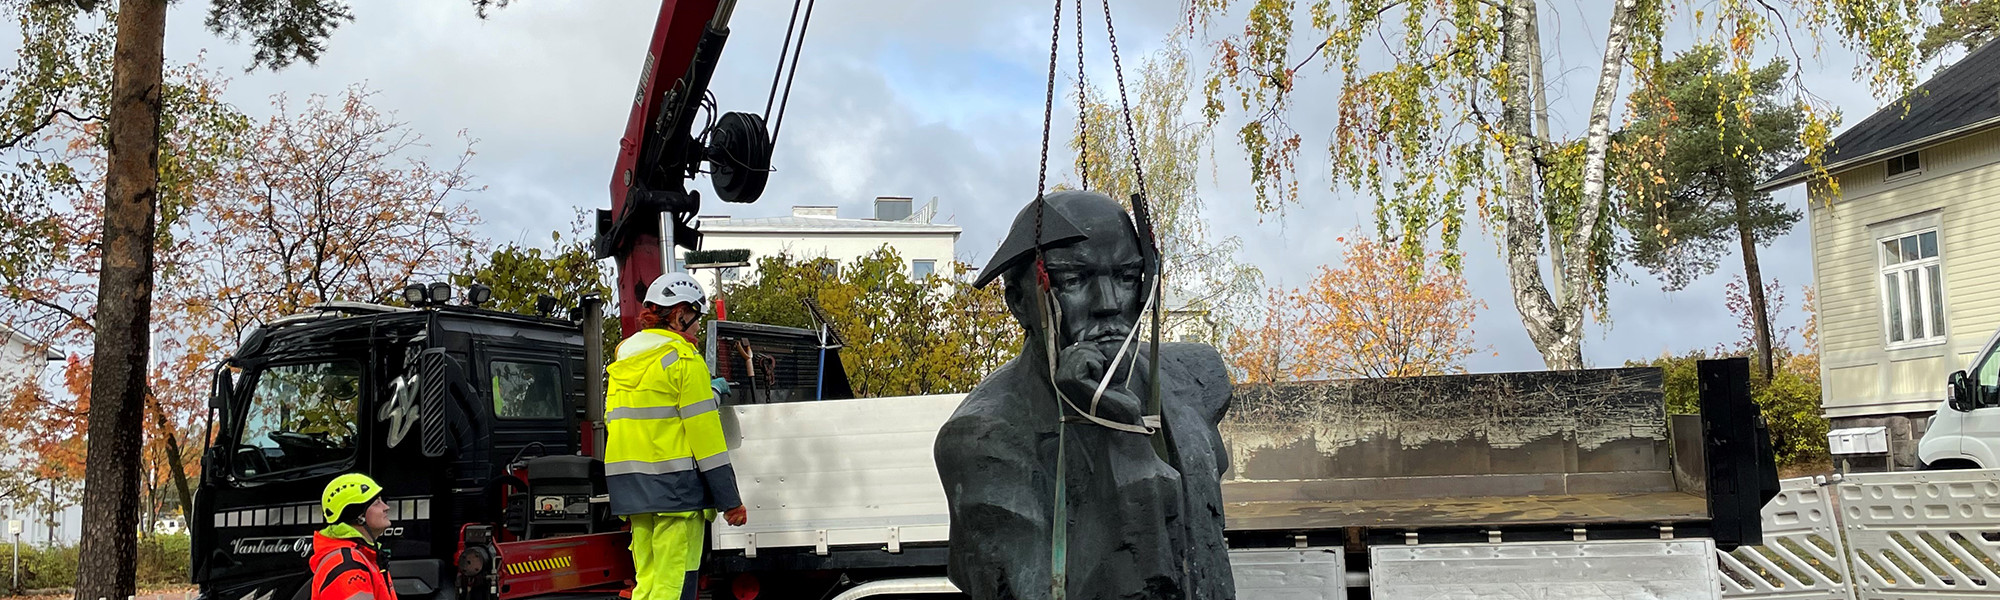 Leninin patsas siirrettiin varastoon